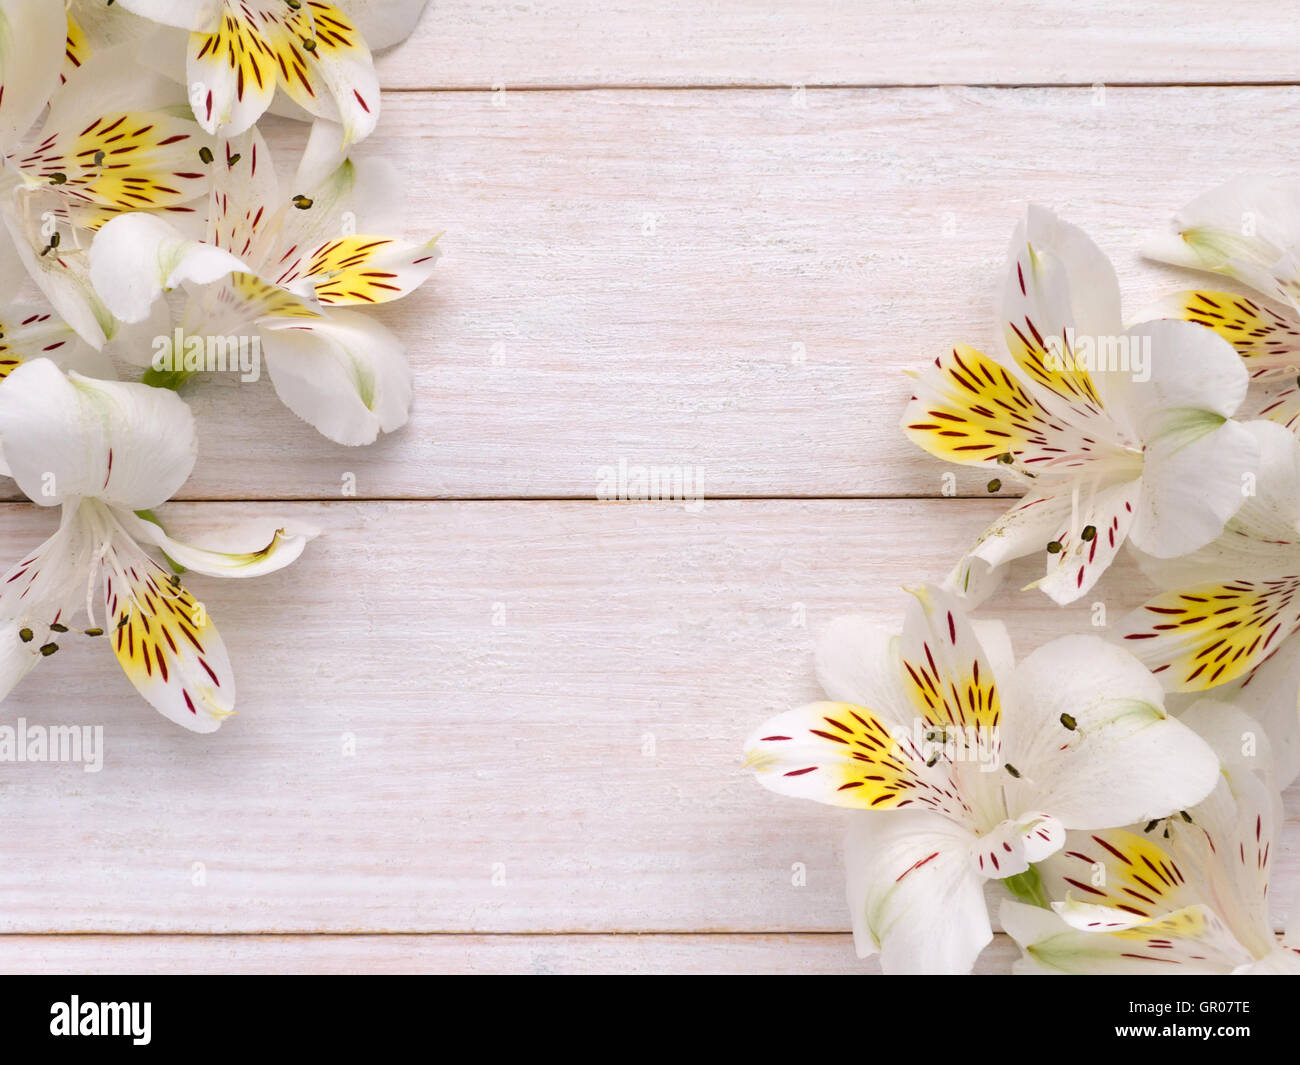 Ramos de licitación alstroemeria flores blancas y amarillas en las esquinas del fondo rústico Foto de stock